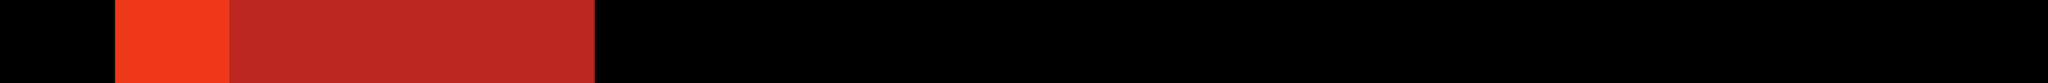 Baugroup Logo Balken